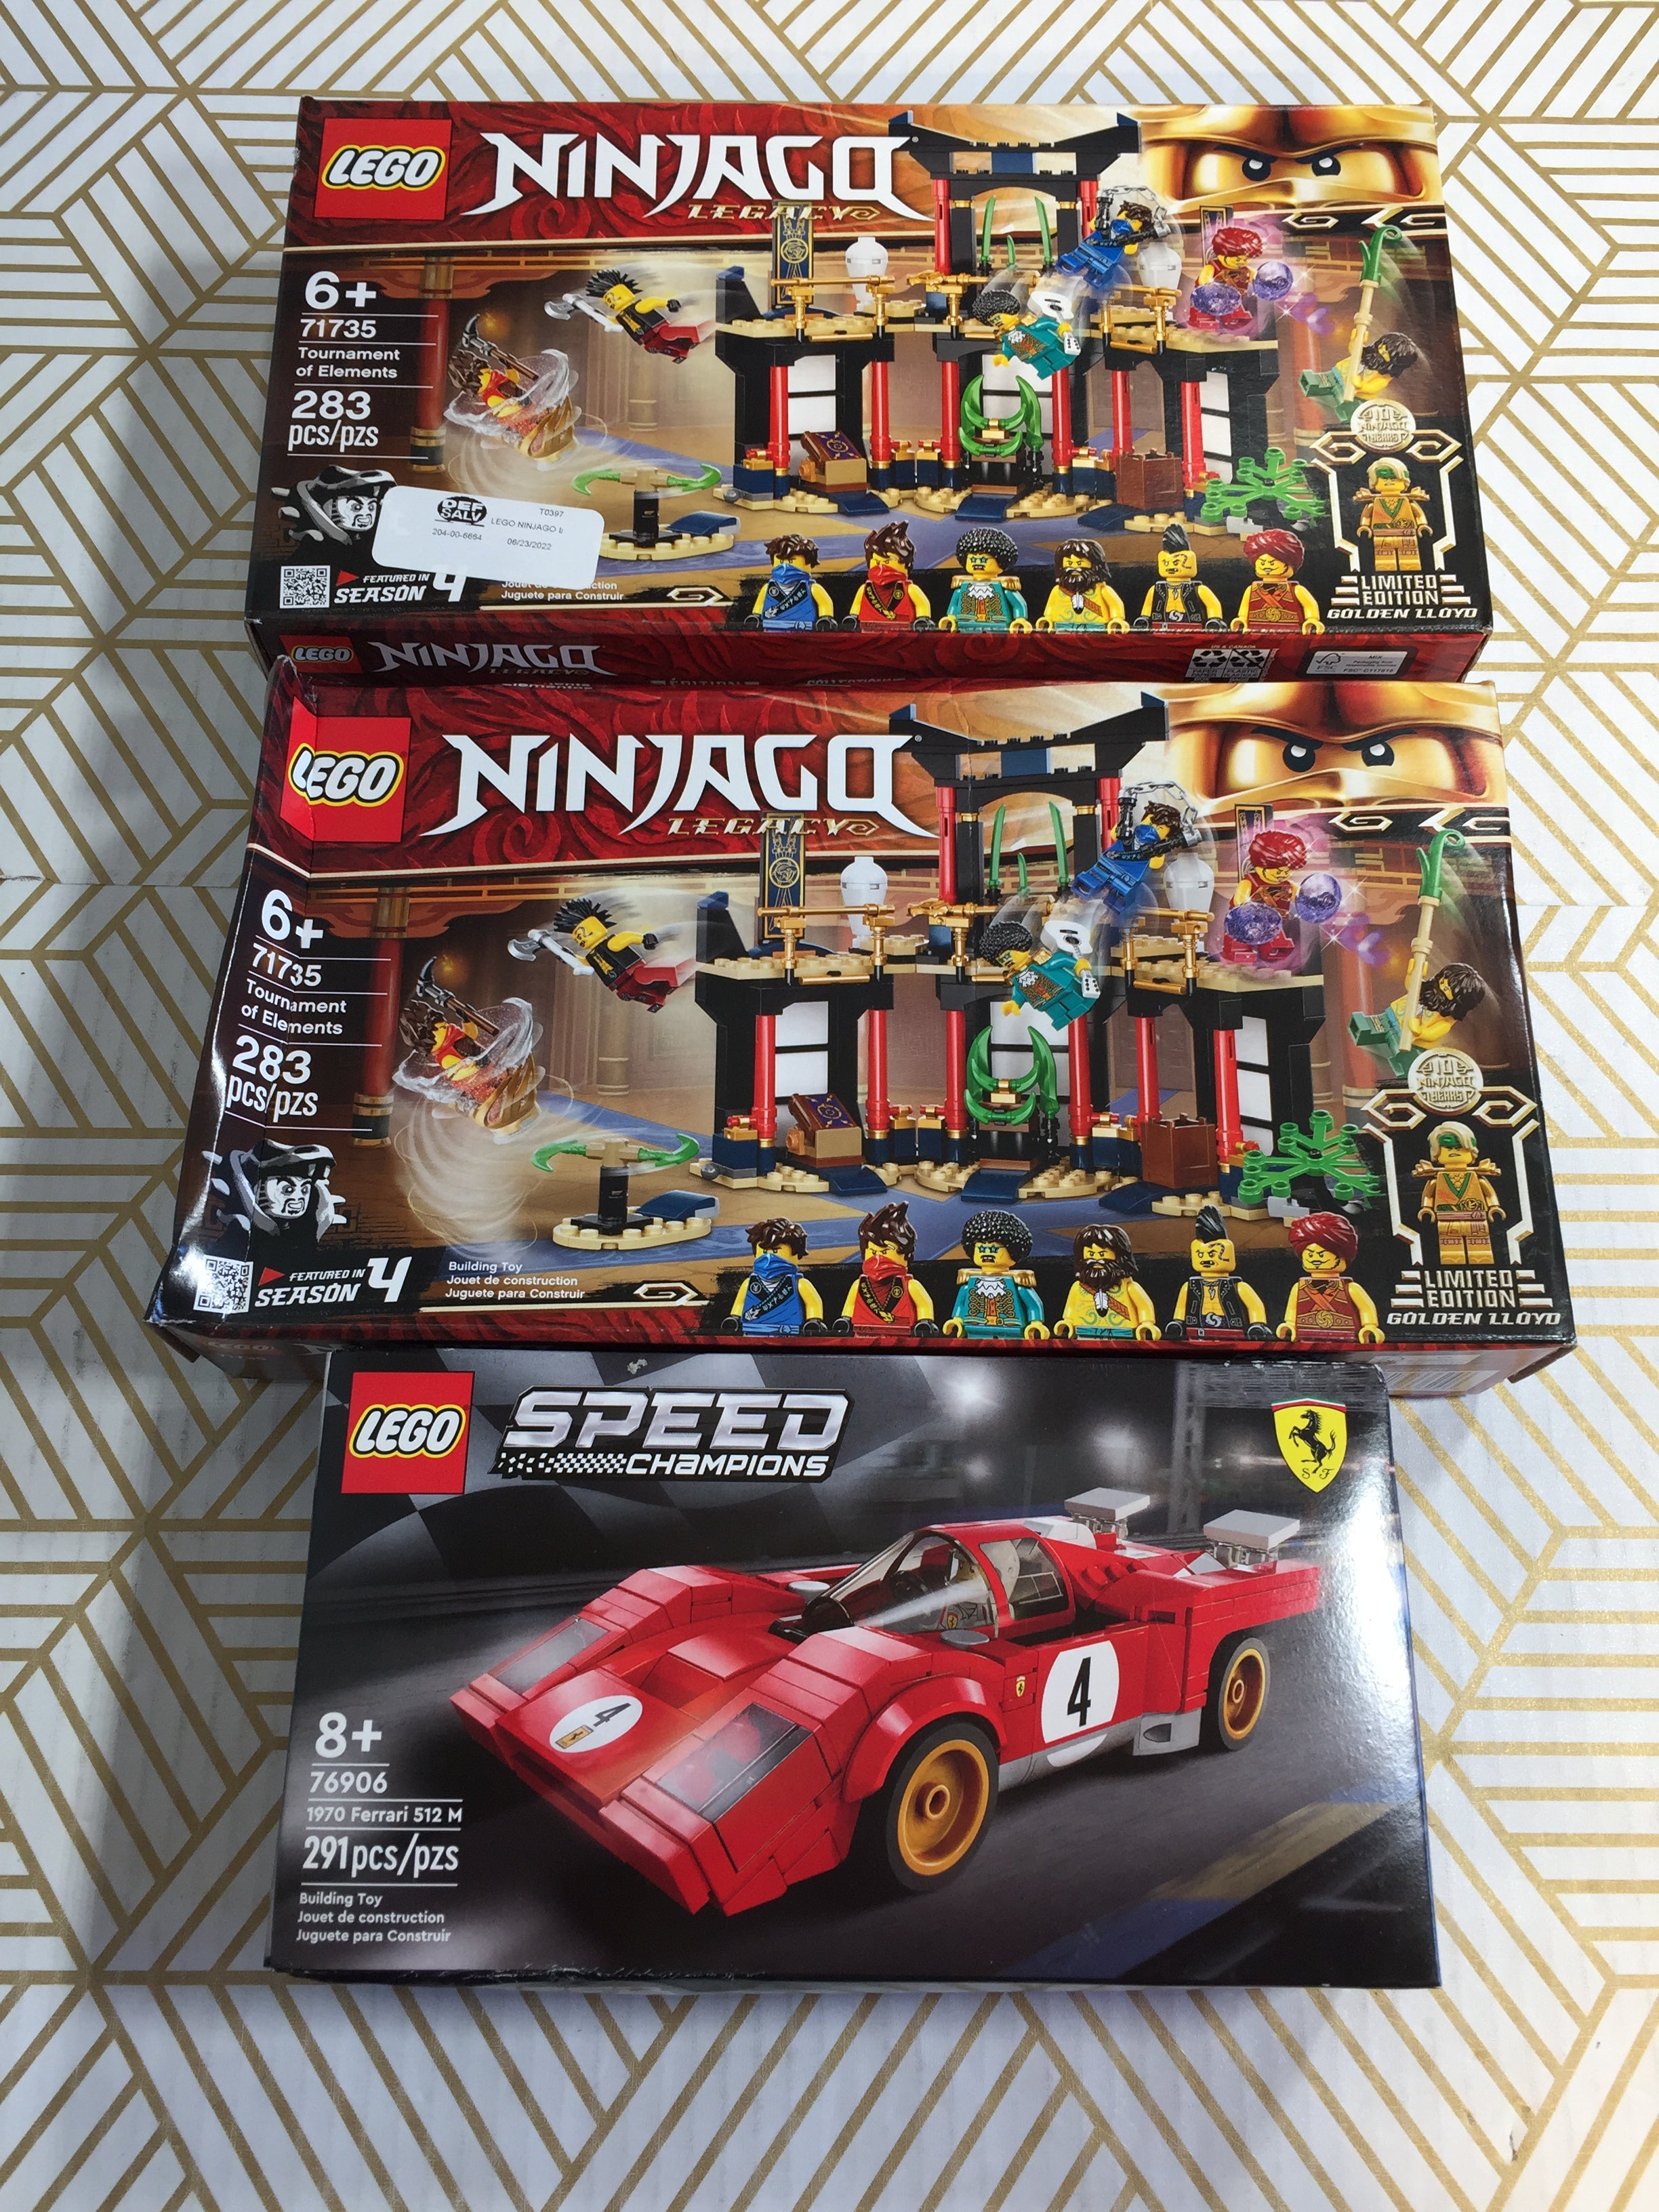 LEGO LOT - 2 LEGO NINJAGO 71735 & 1 LEGO SPEED 76906 - SEALED (7922911084782)